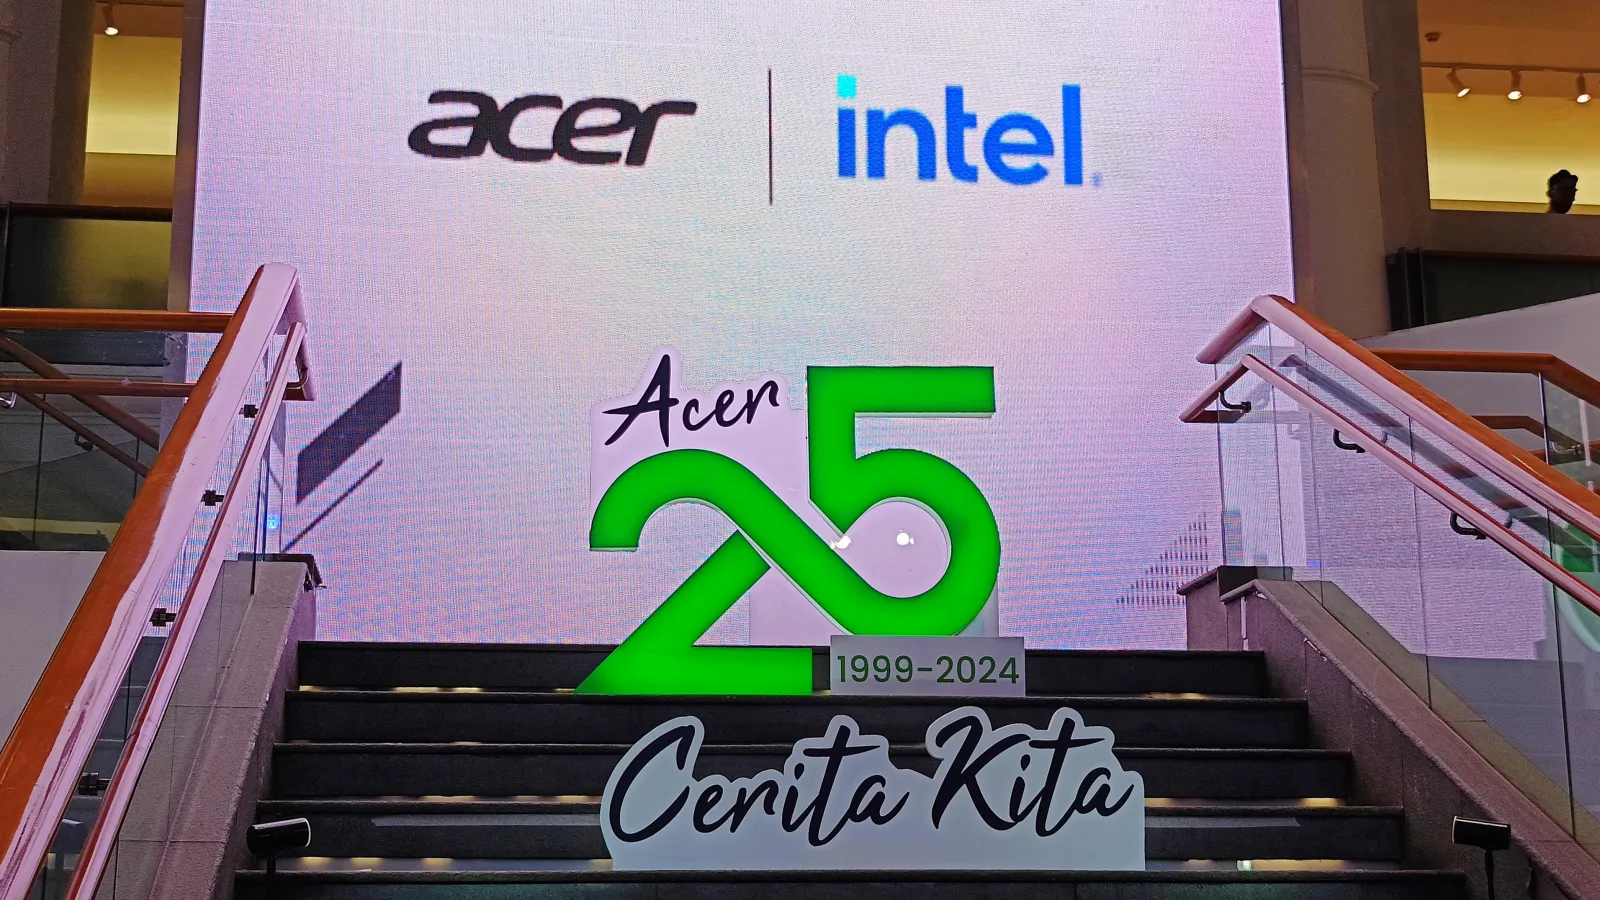 Kejutan 25 Tahun Acer di Indonesia, Ada Promo dan Program Undian Berhadiah Mobil Listrik